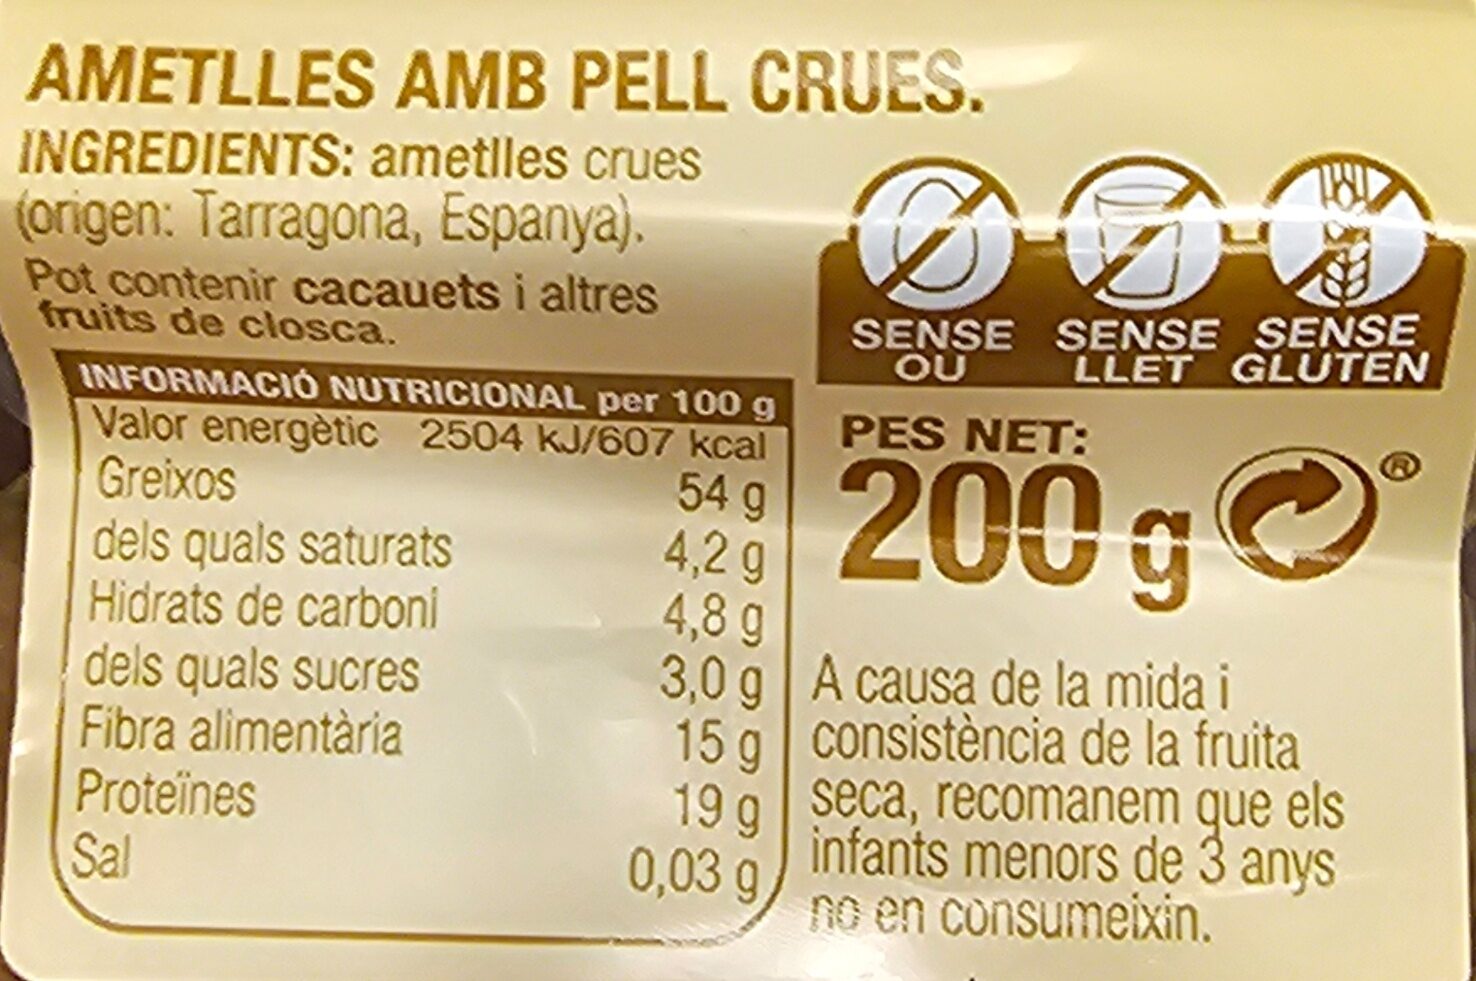 Ametlles - Ingredients